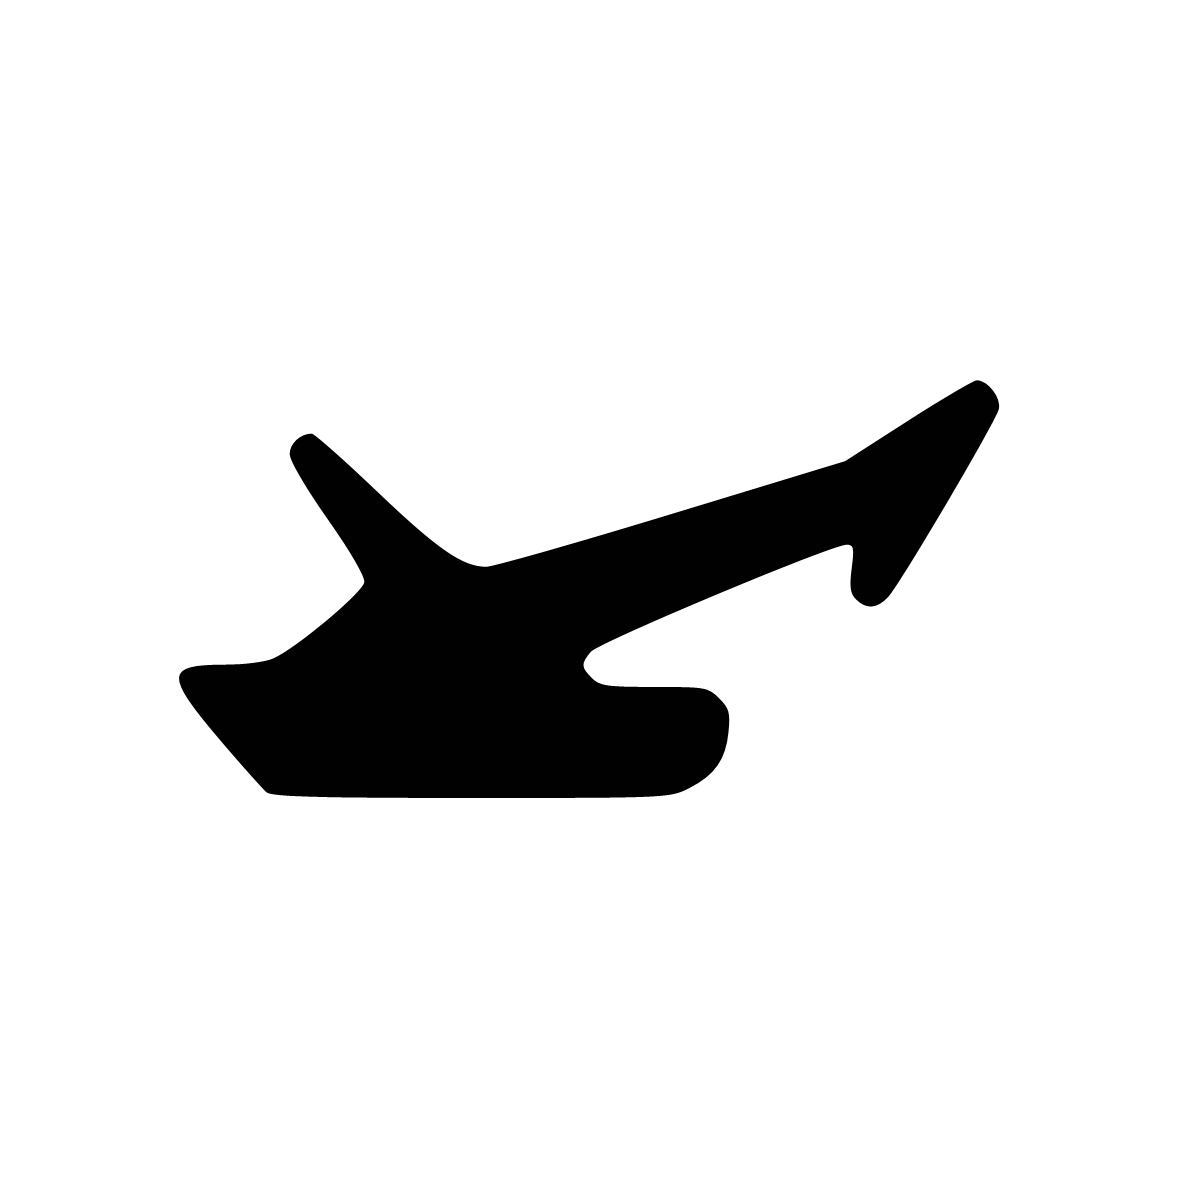 Anschlagdichtung mit Lippe und glattem Fuß | 8 mm Höhe | Farbe: schwarz 